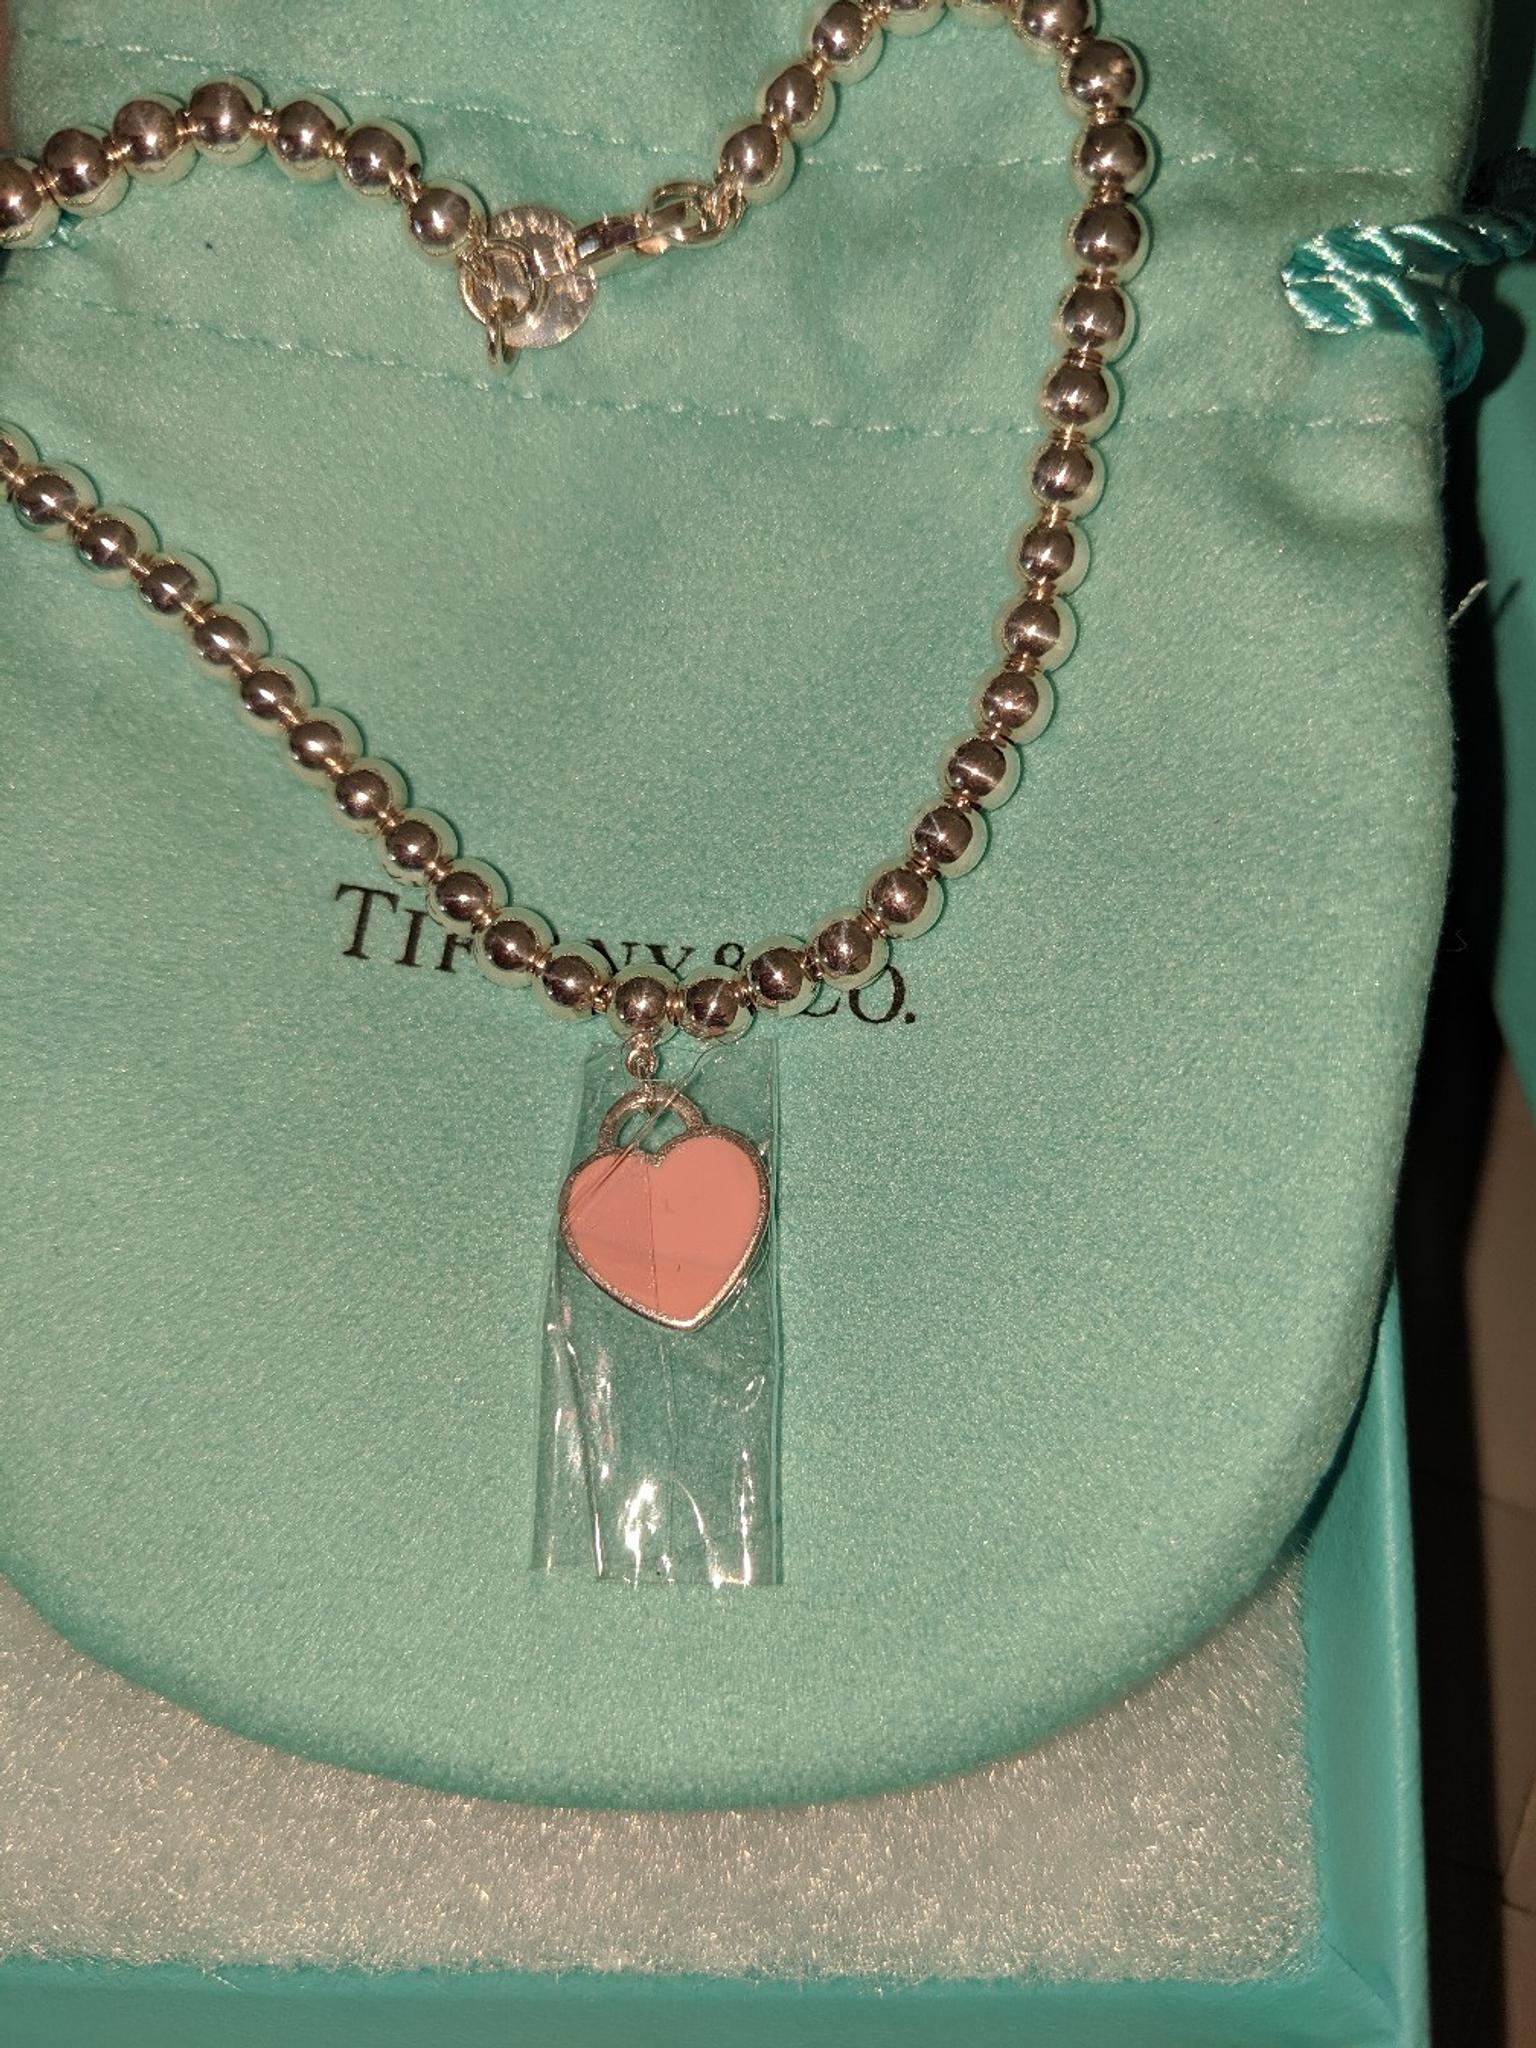 tiffany bead bracelet pink heart